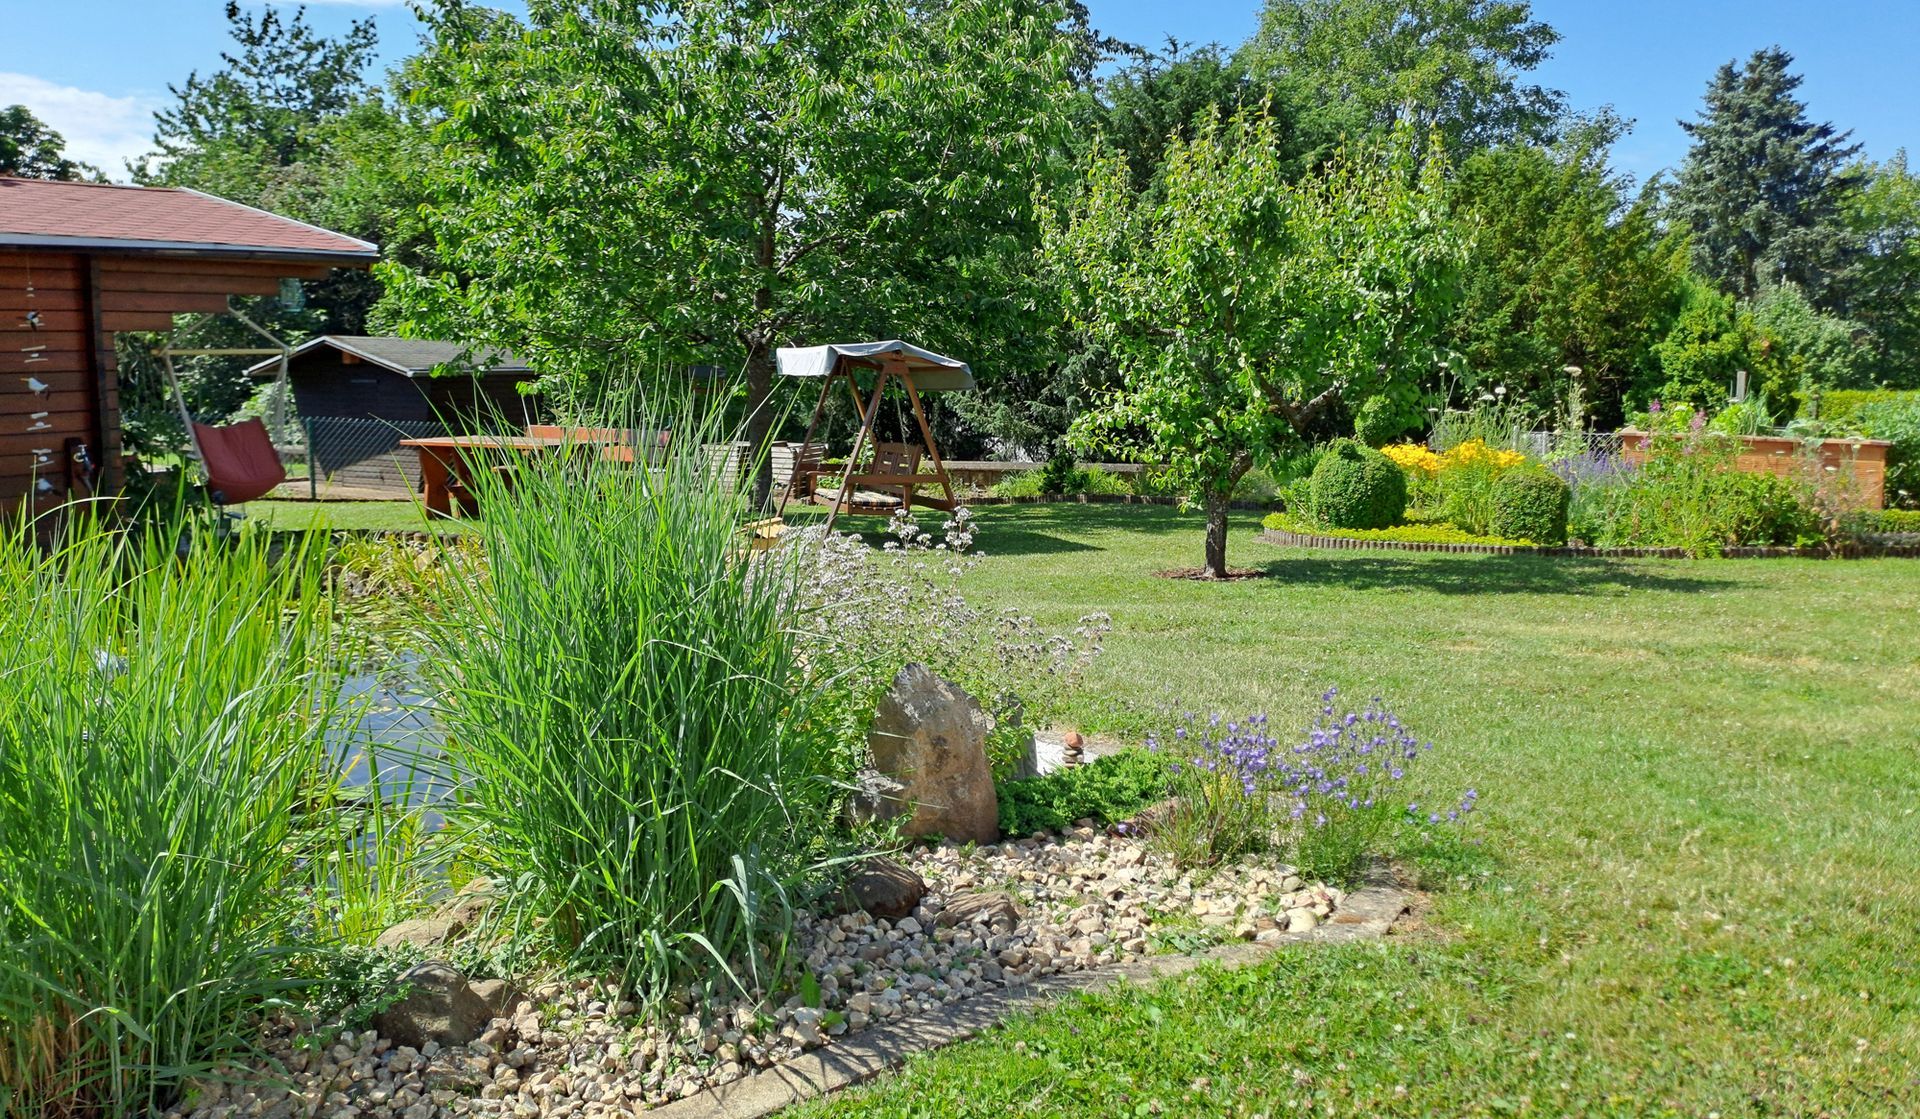 Gartenteich mit Bachlauf, das Wasserelement im Gartenbereich